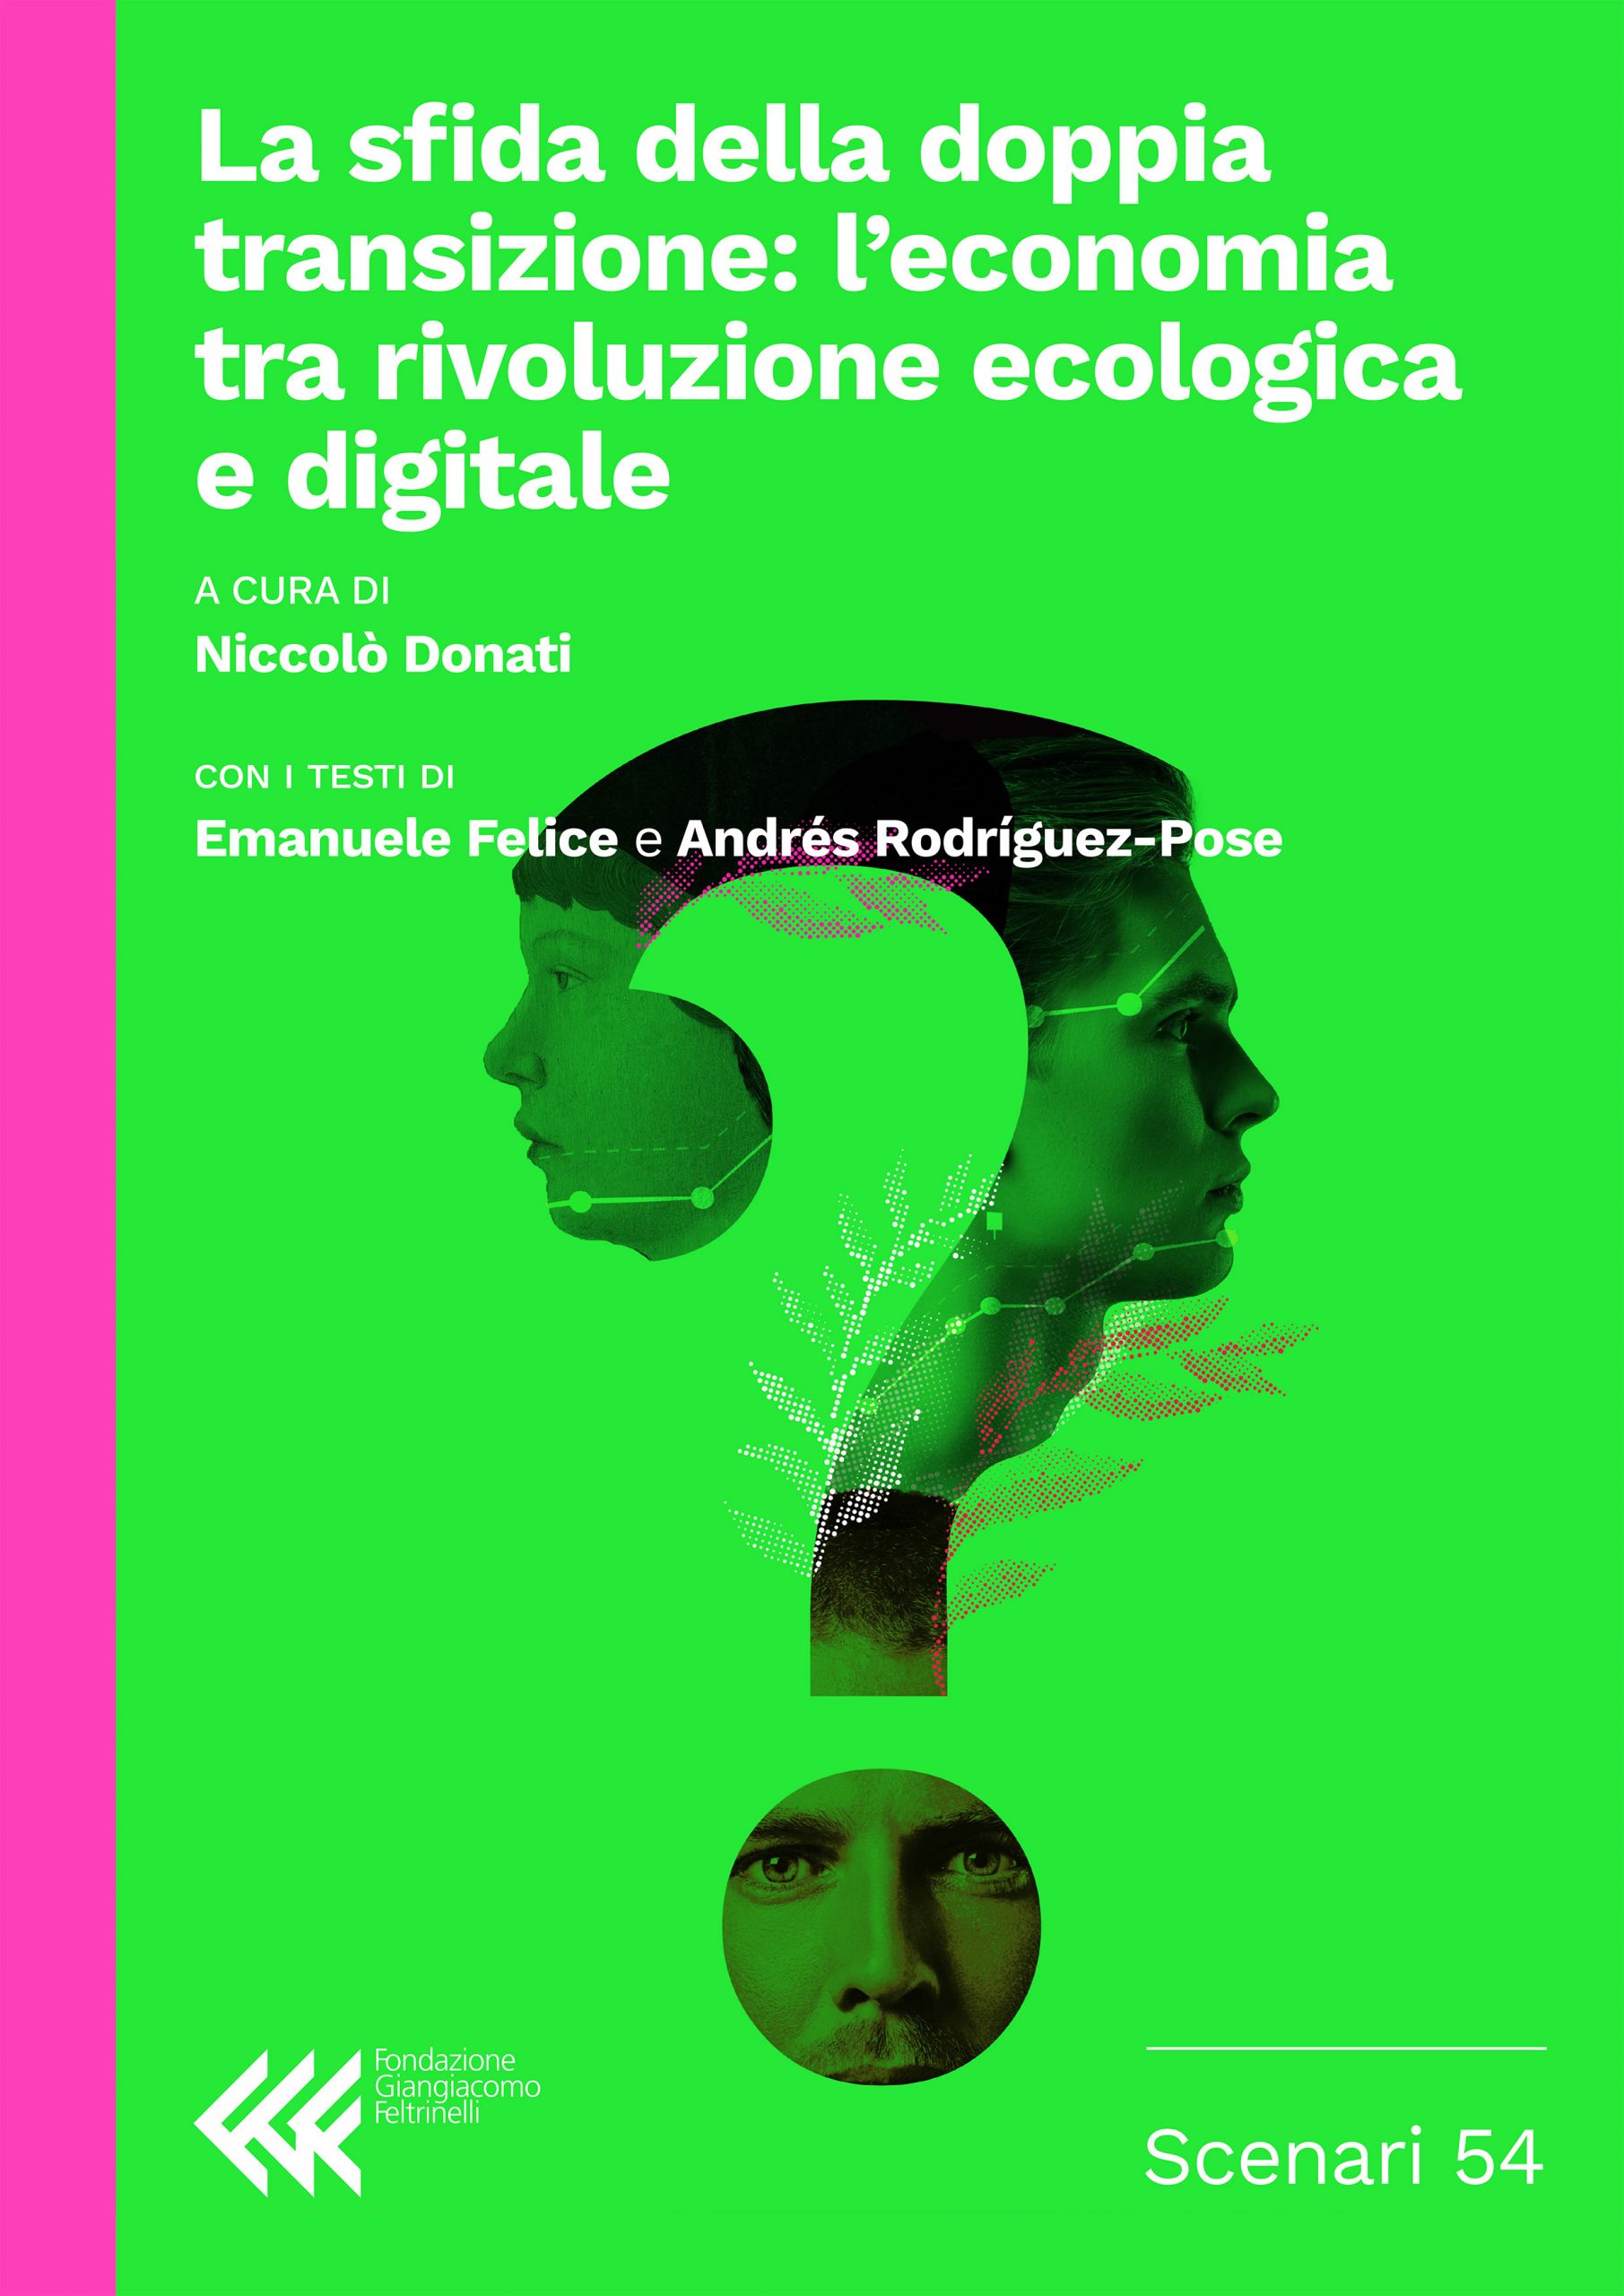 La sfida della doppia transizione: l’economia tra rivoluzione ecologica e digitale
Legacy divulgativa dei Colloqui Internazionali di Toscana
